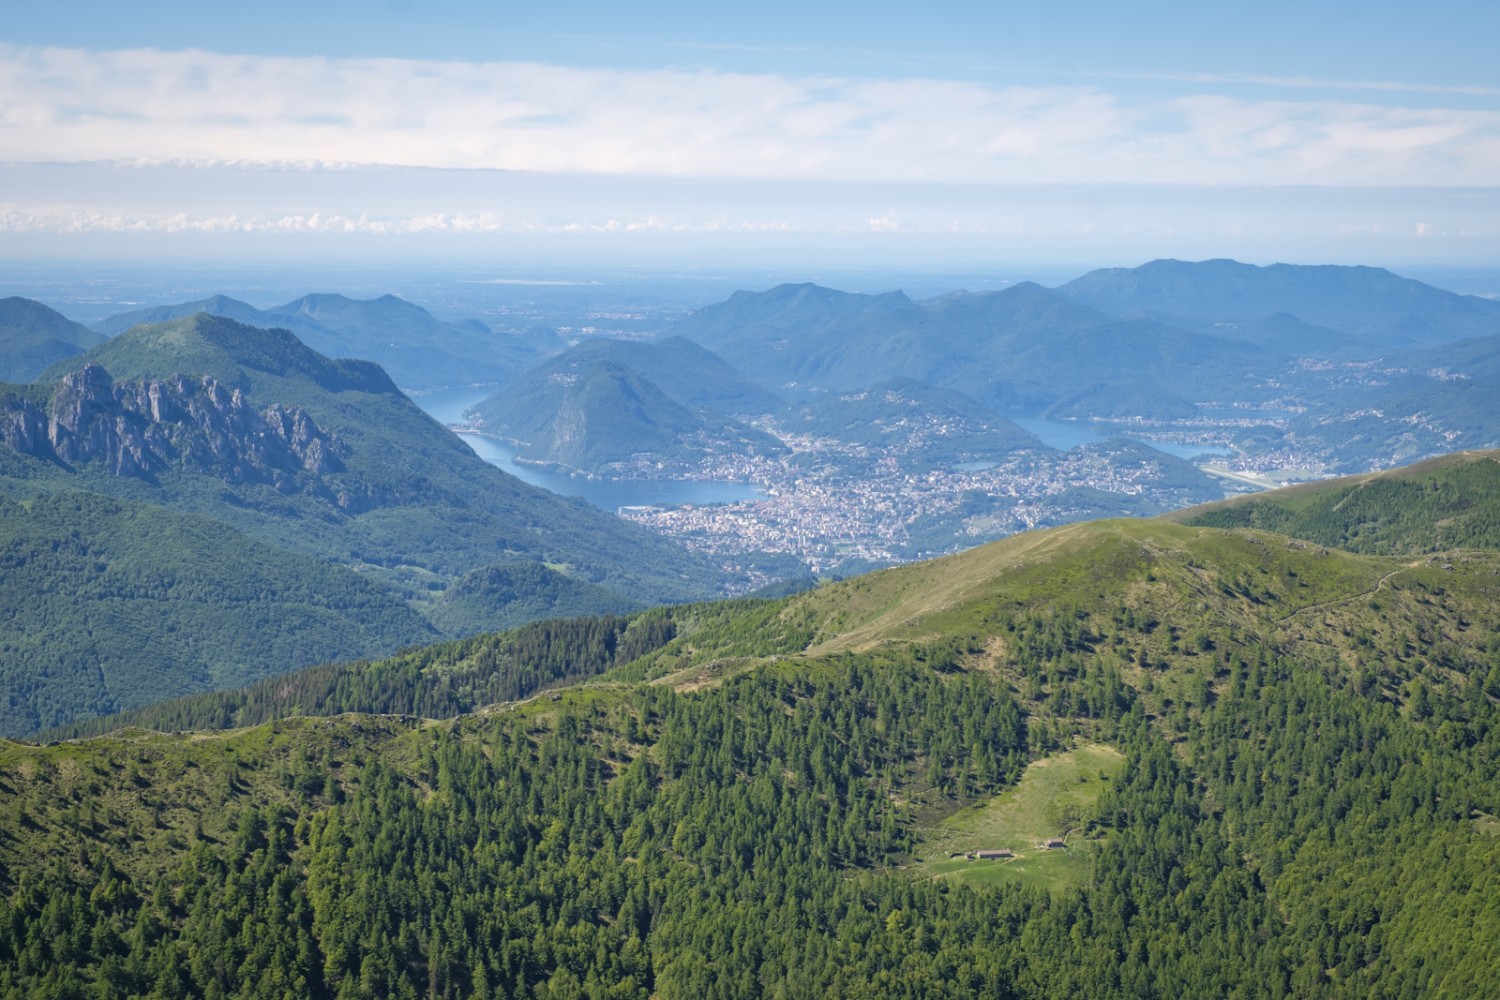 Weit unten sieht man die Kammroute und Lugano. Bild: Iris Kürschner